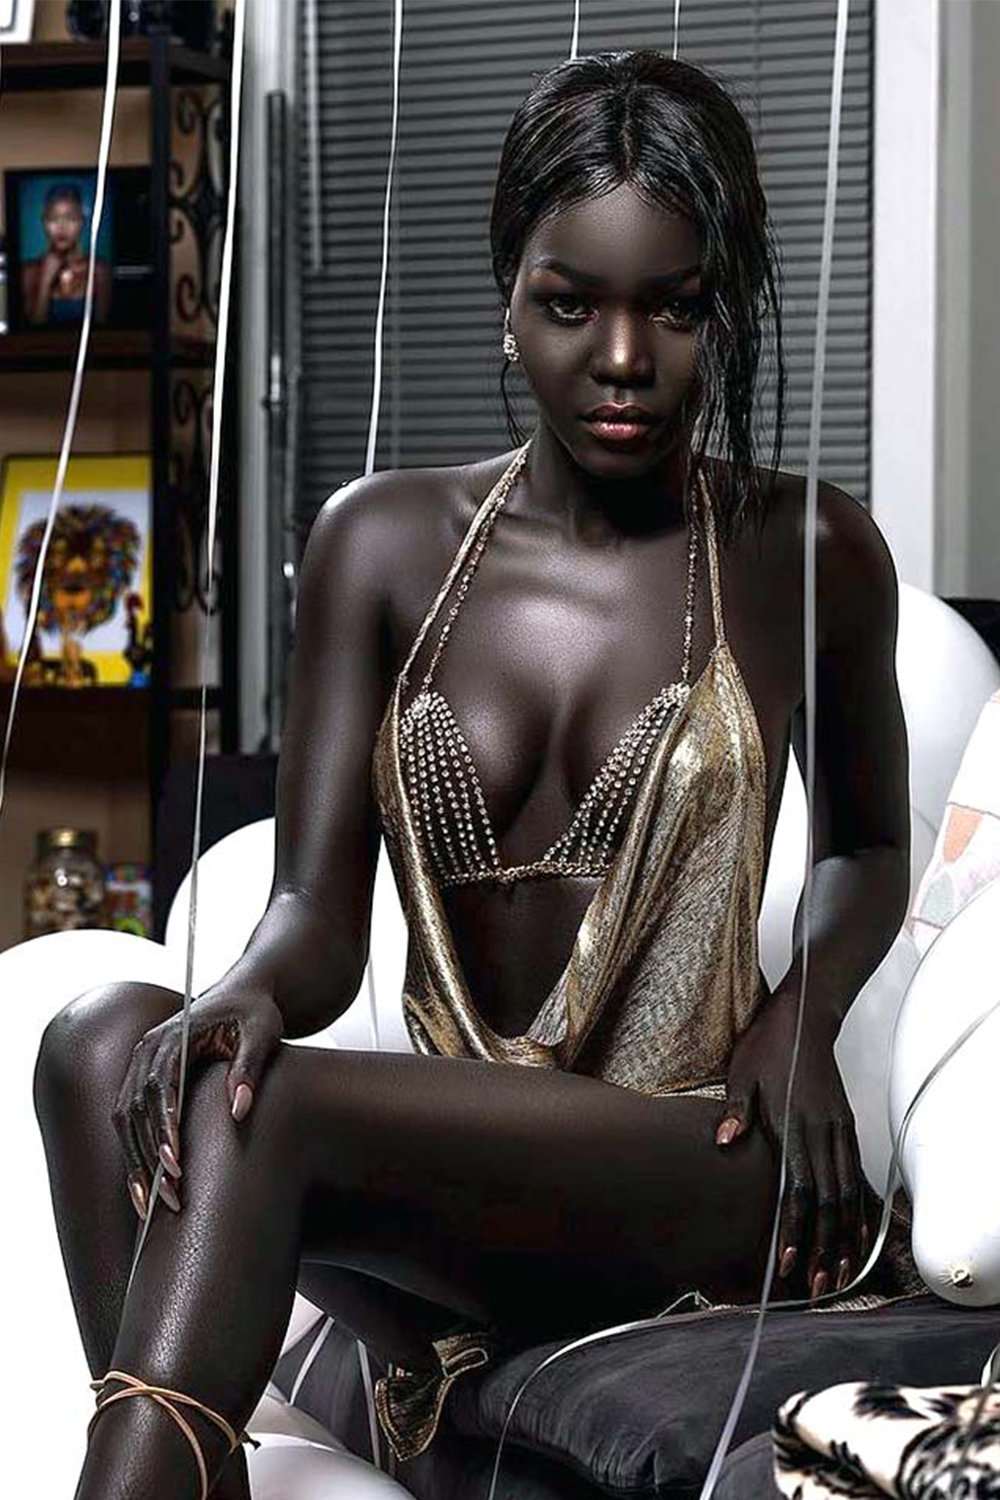 Имеют негритянок. Няким Гатвеч. Нуаким Гатвеч модель из Южного Судана. Королева тьмы модель из Южного Судана Ньяким. Nyakim Gatwech (Ньяким Гатвеч) - 24-летняя модель.